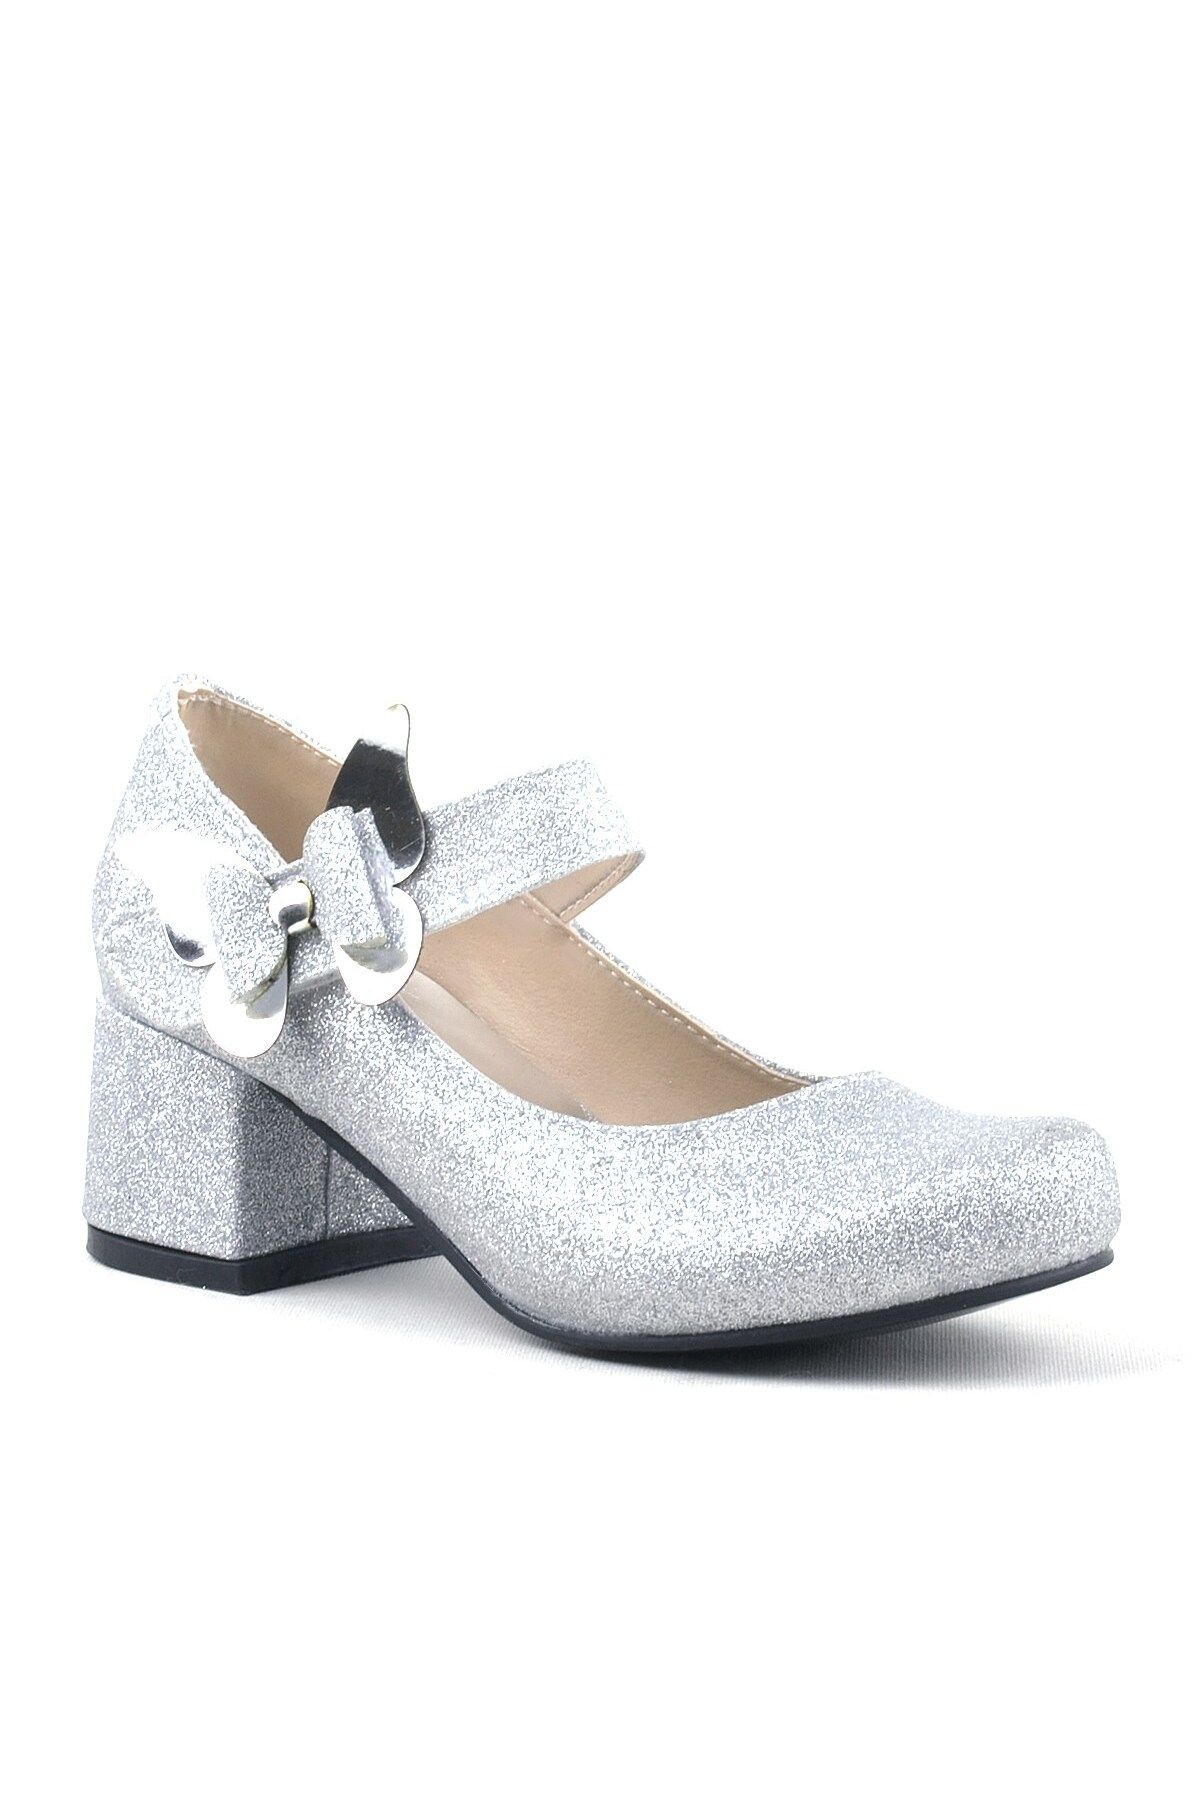 hapshoe Winx Gümüş Işıltılı Kelebekli Kız Çocuk Topuklu Ayakkabı